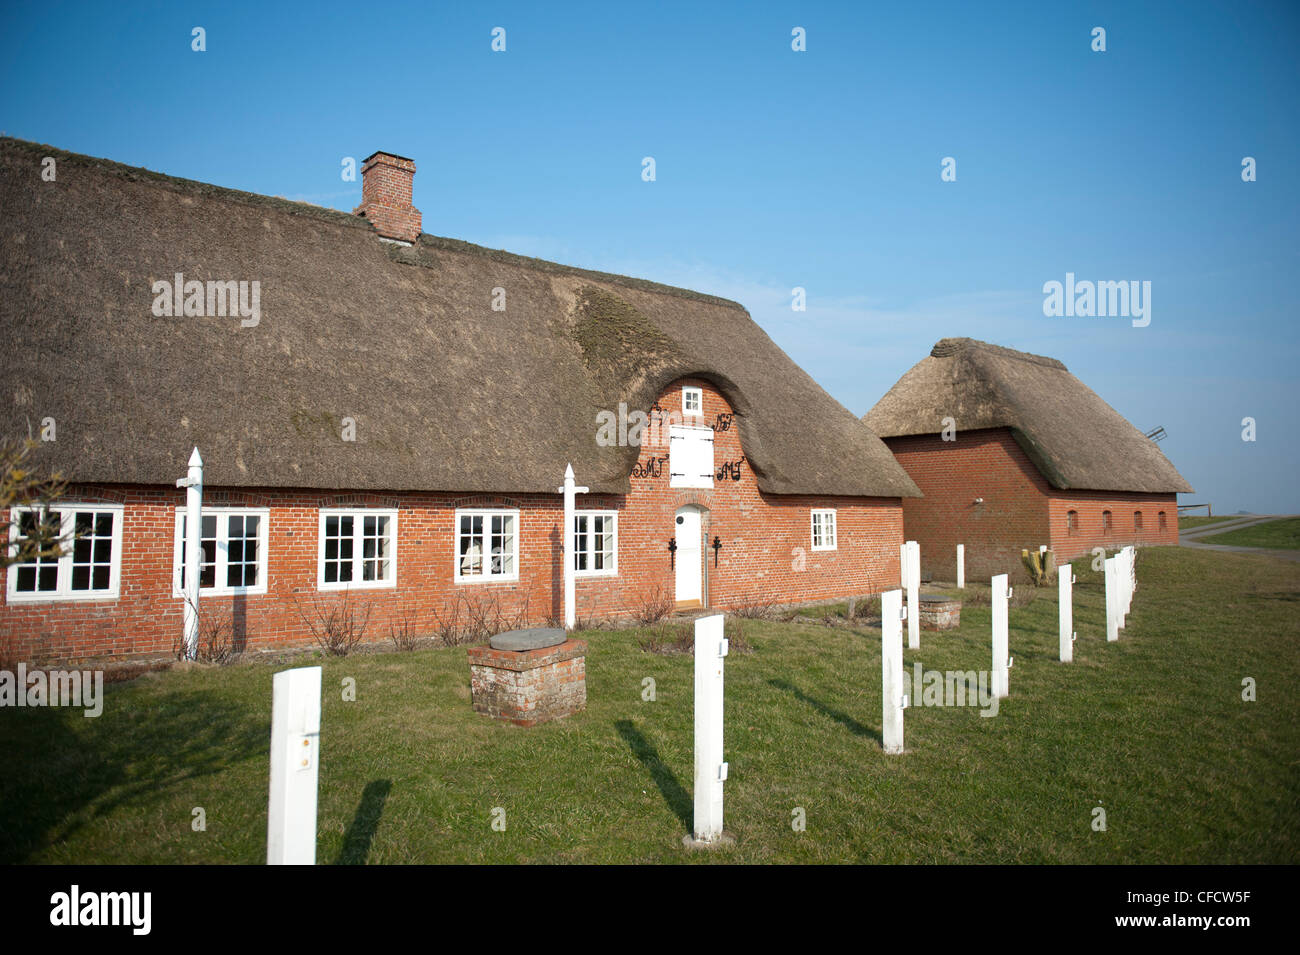 Traditionellen friesischen Häuser am Ketelswarf auf Hallig Langeneß, eine "Insel" in der UNESCO Website Wadden Meer von Norddeutschland Stockfoto